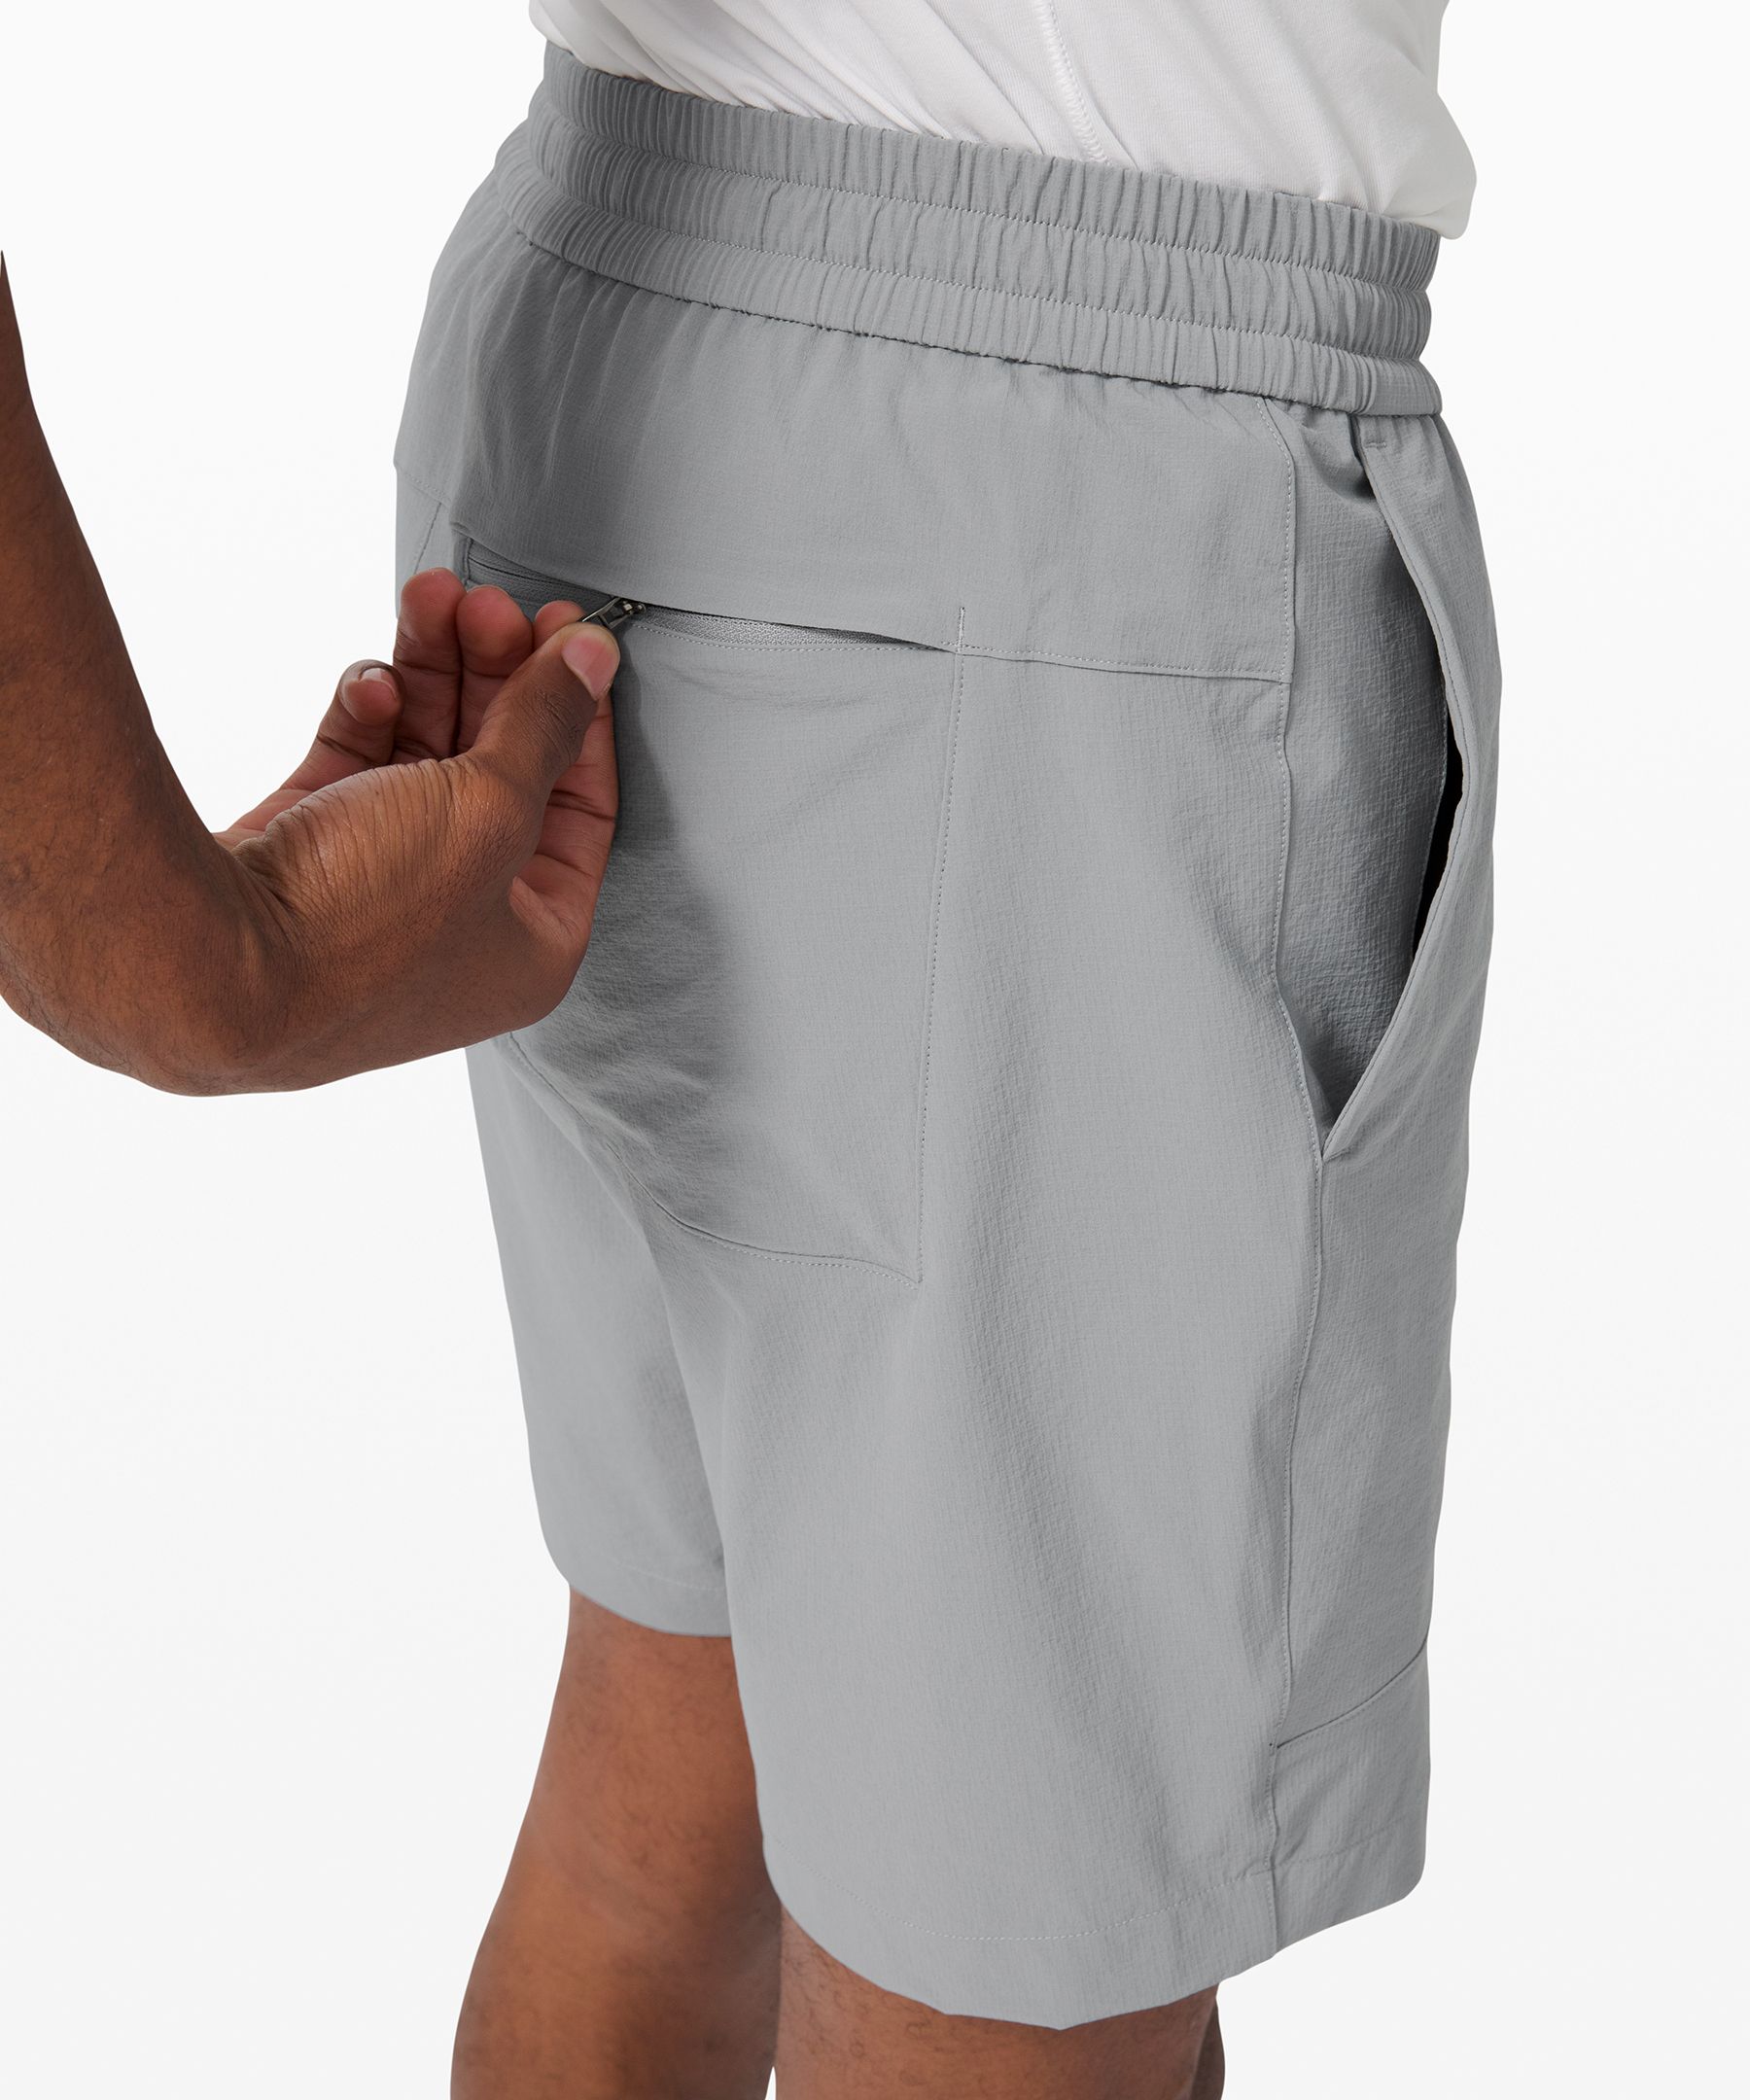 lululemon bowline shorts